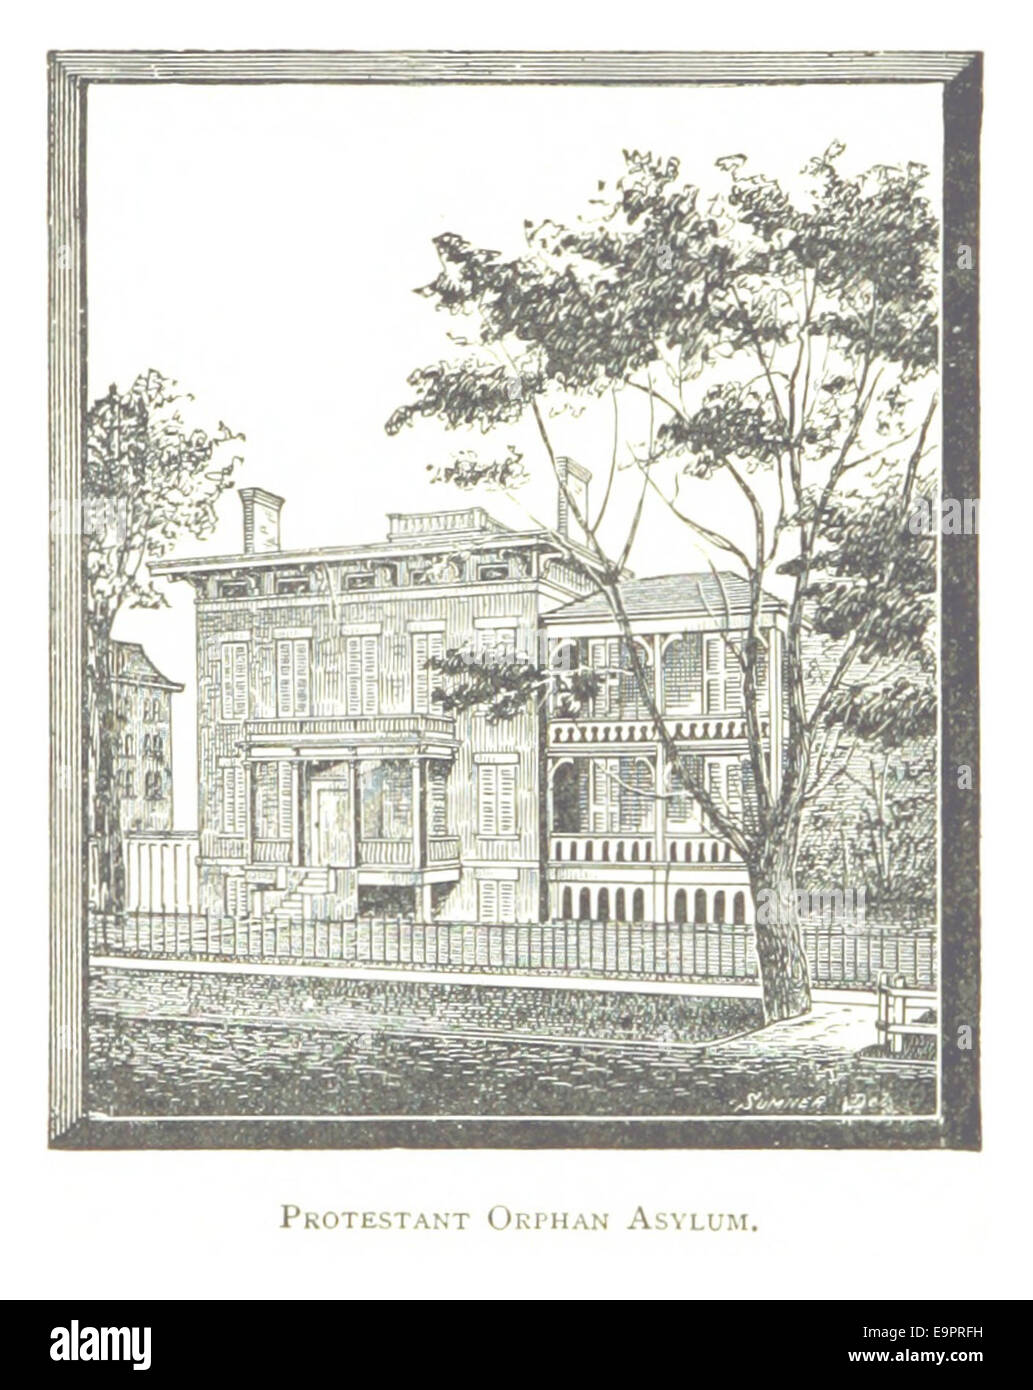 Imprenditore(1884) Detroit, p704 protestante asilo ORFANI Foto Stock